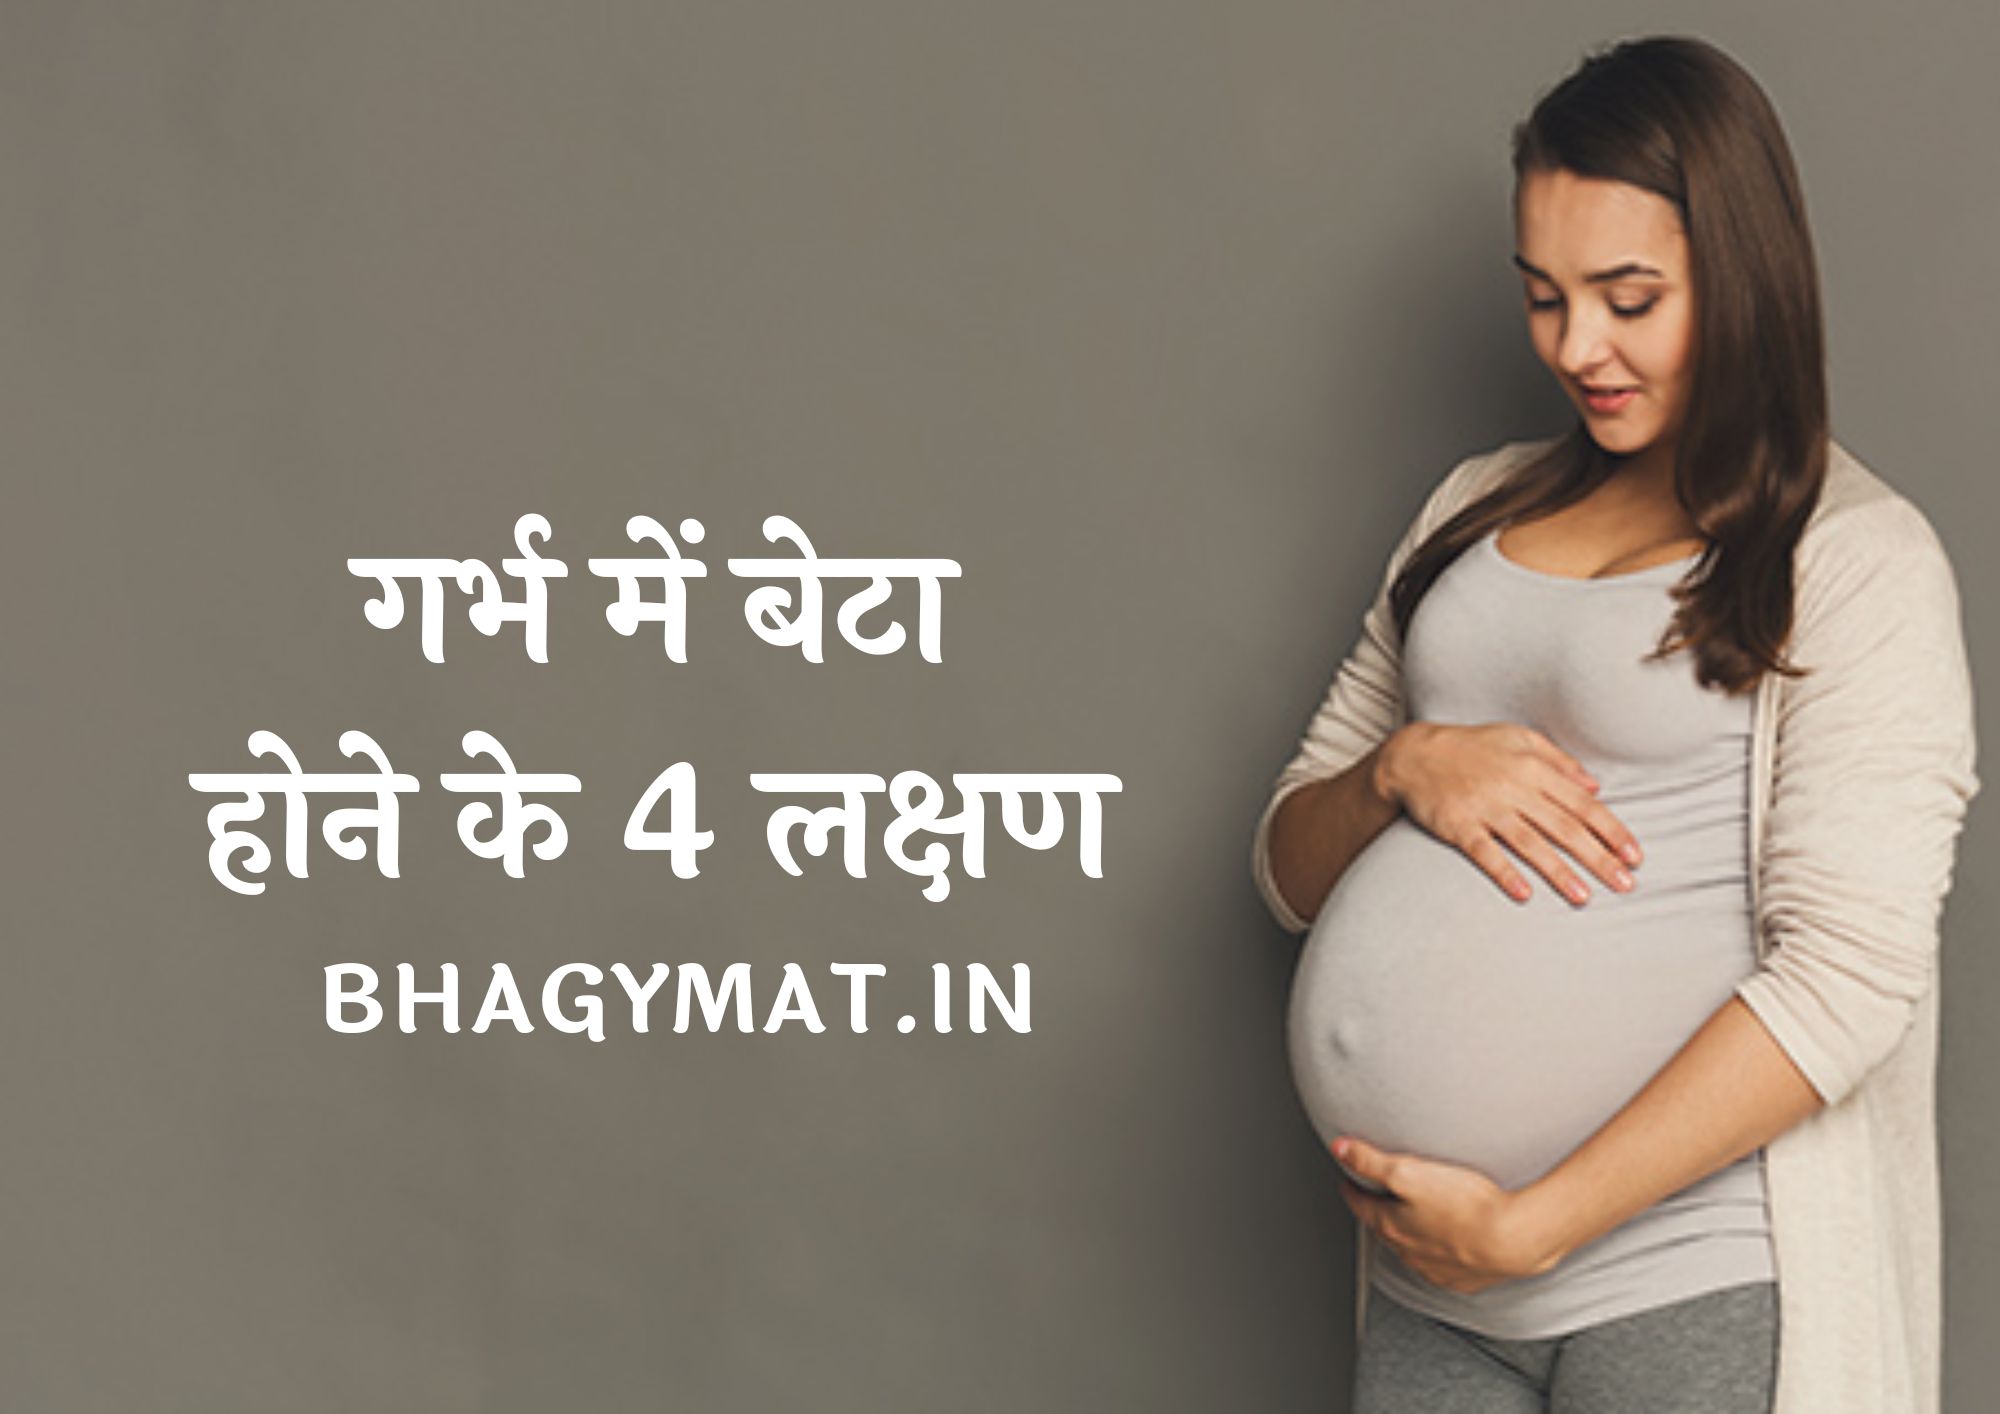 गर्भ में बेटा होने के 4 लक्षण बताइए (प्रेगनेंसी में बेटा होने के लक्षण) - Garbh Mein Beta Hone Ke 4 Lakshan